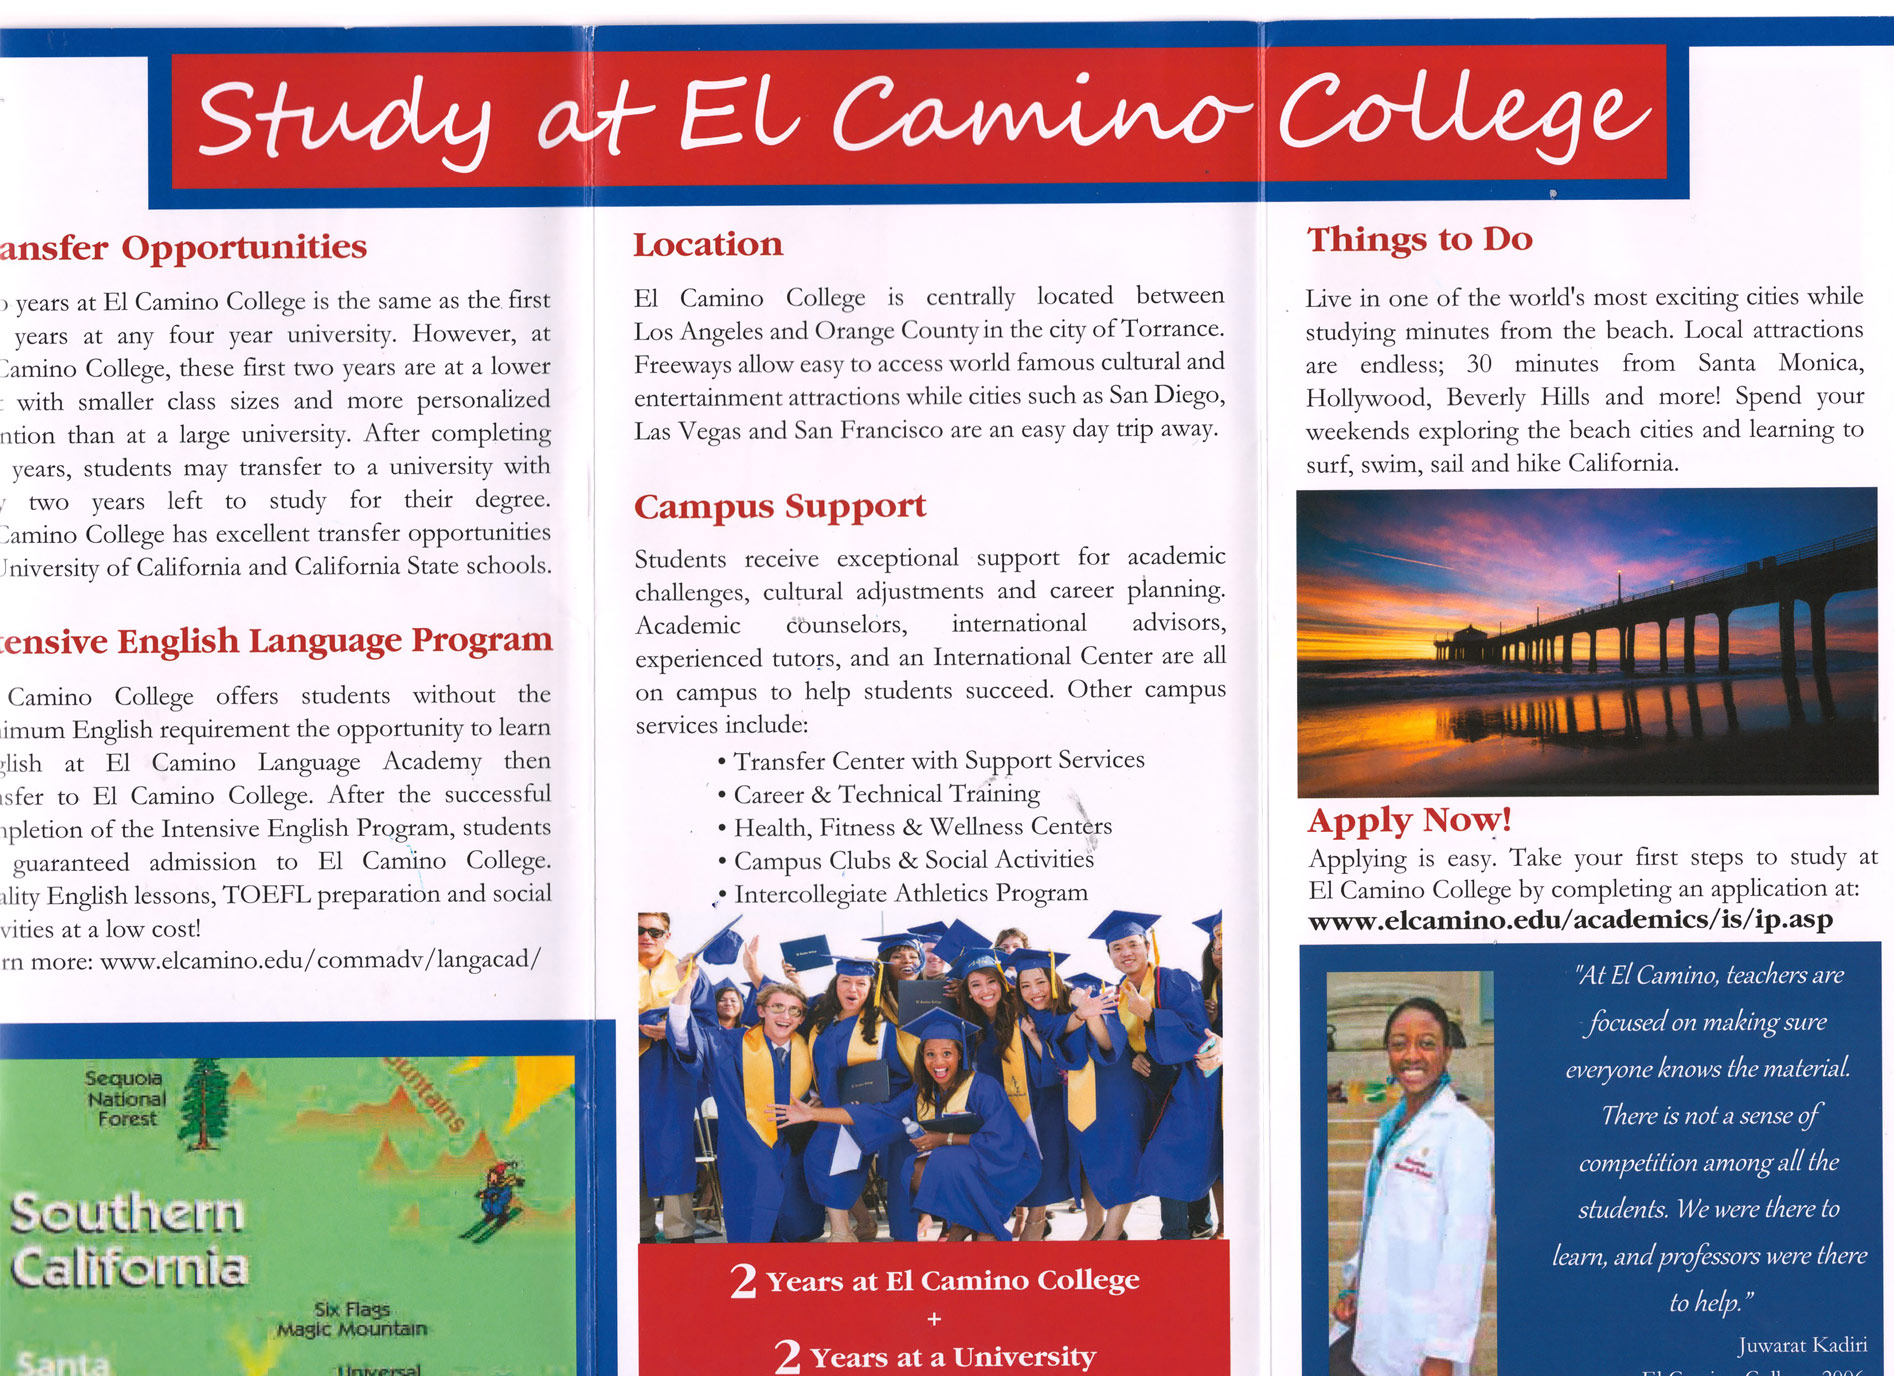 Обучение в США в колледже El Camino College